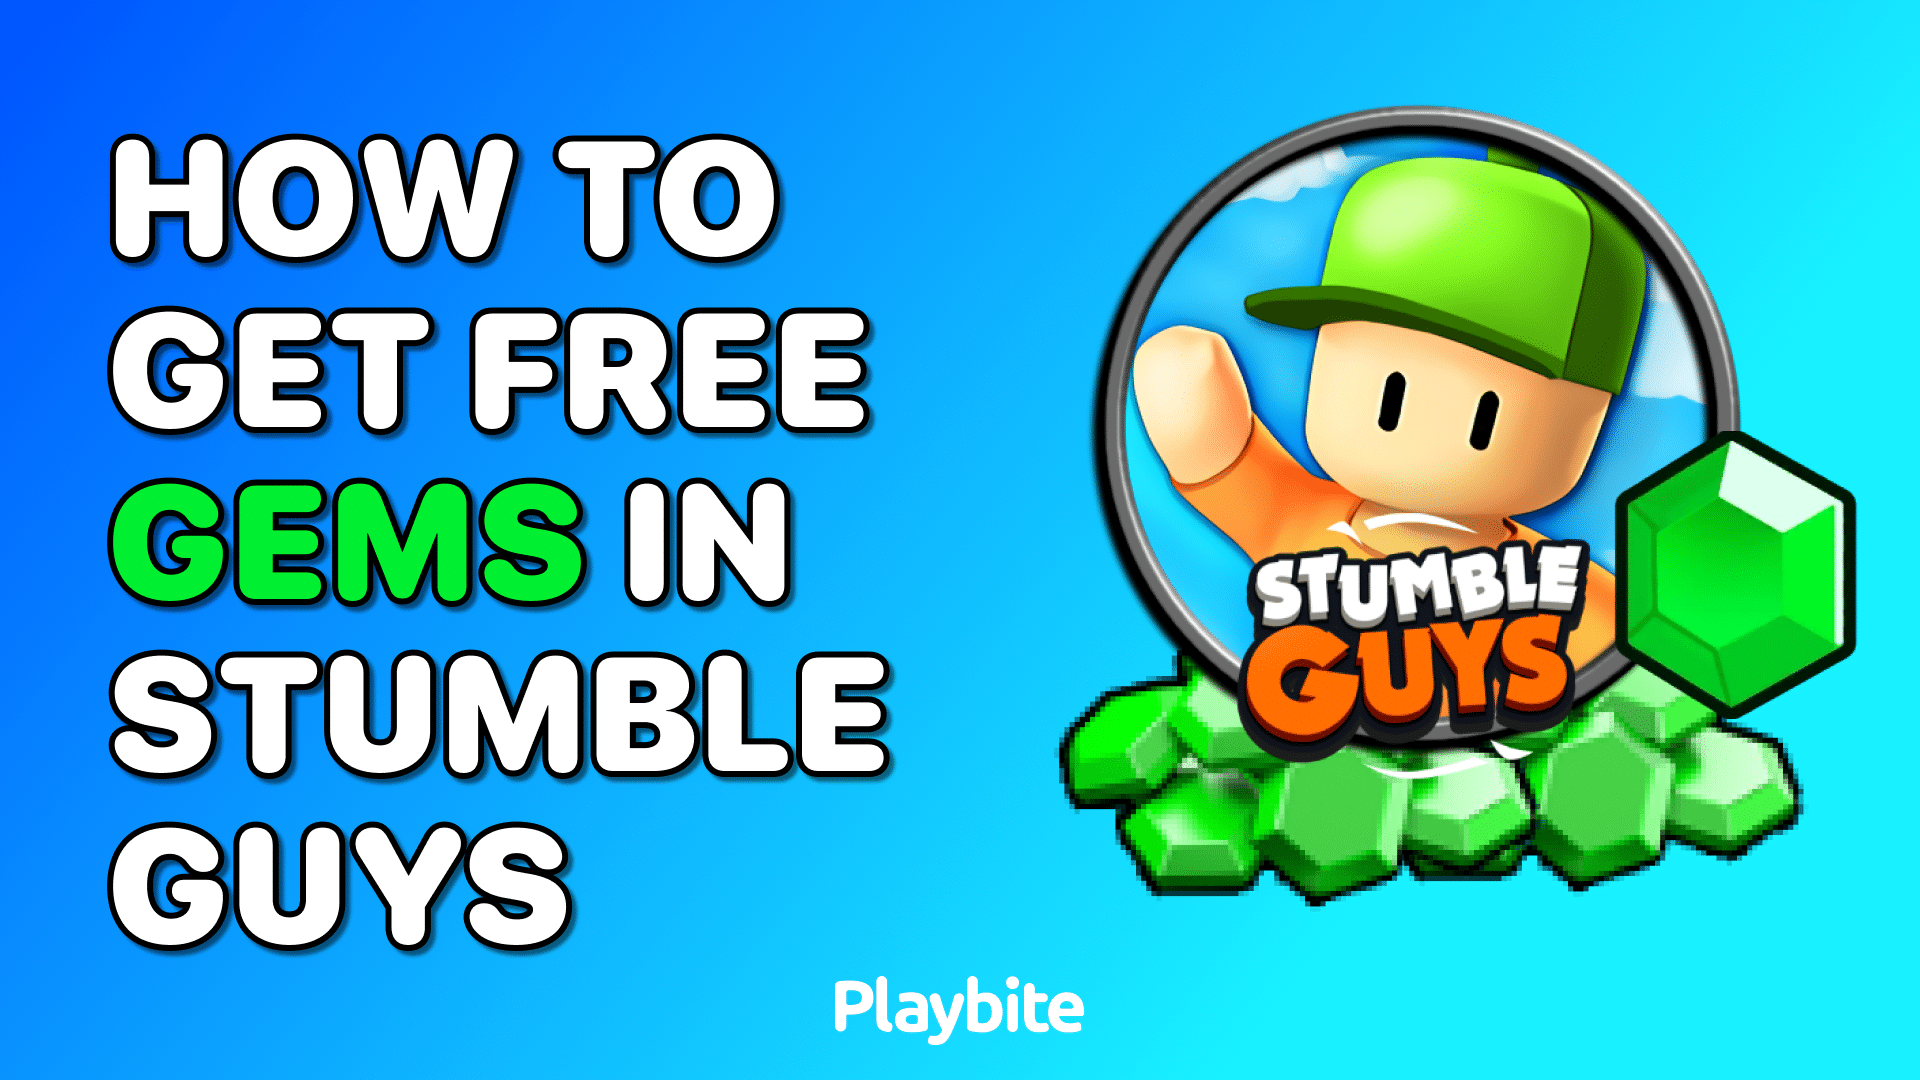 How to play stumble guys on tv｜TikTok Search